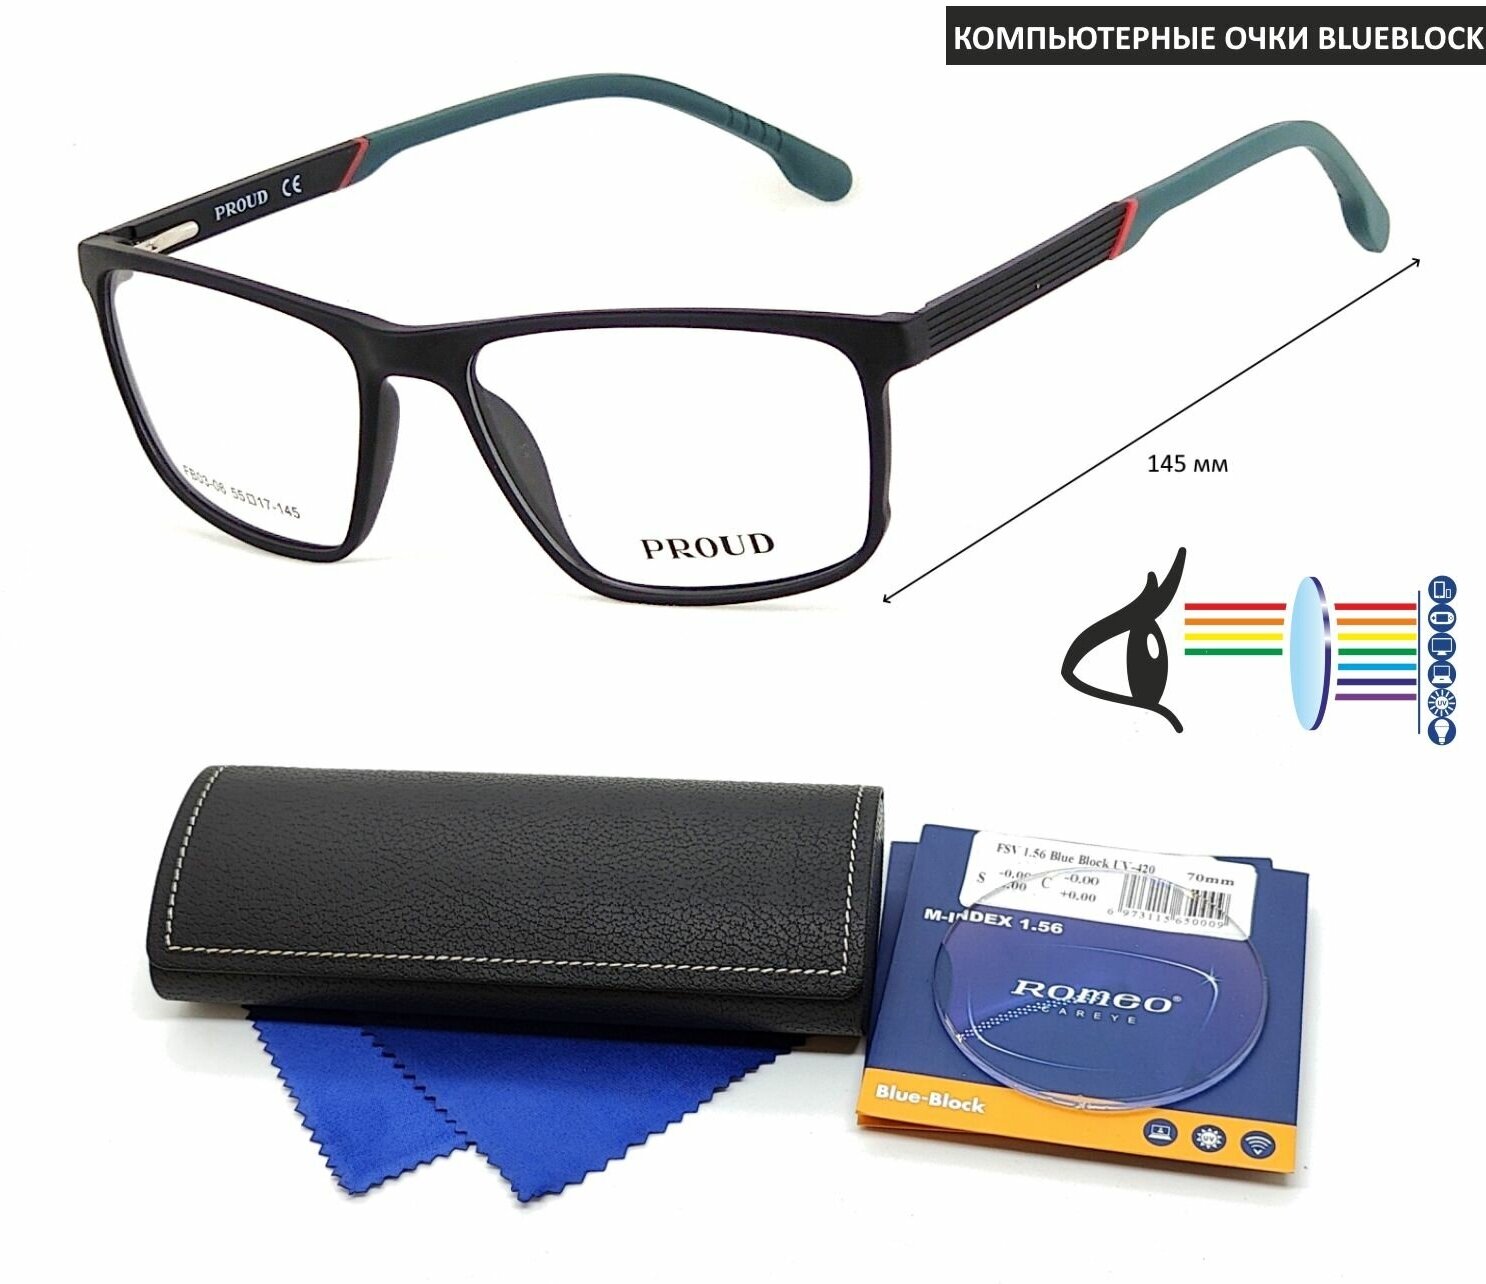 Компьютерные очки с футляром на магните PROUD мод. FB03-06 Цвет 1 с линзами ROMEO 1.56 Blue Block -3.75 РЦ 64-66